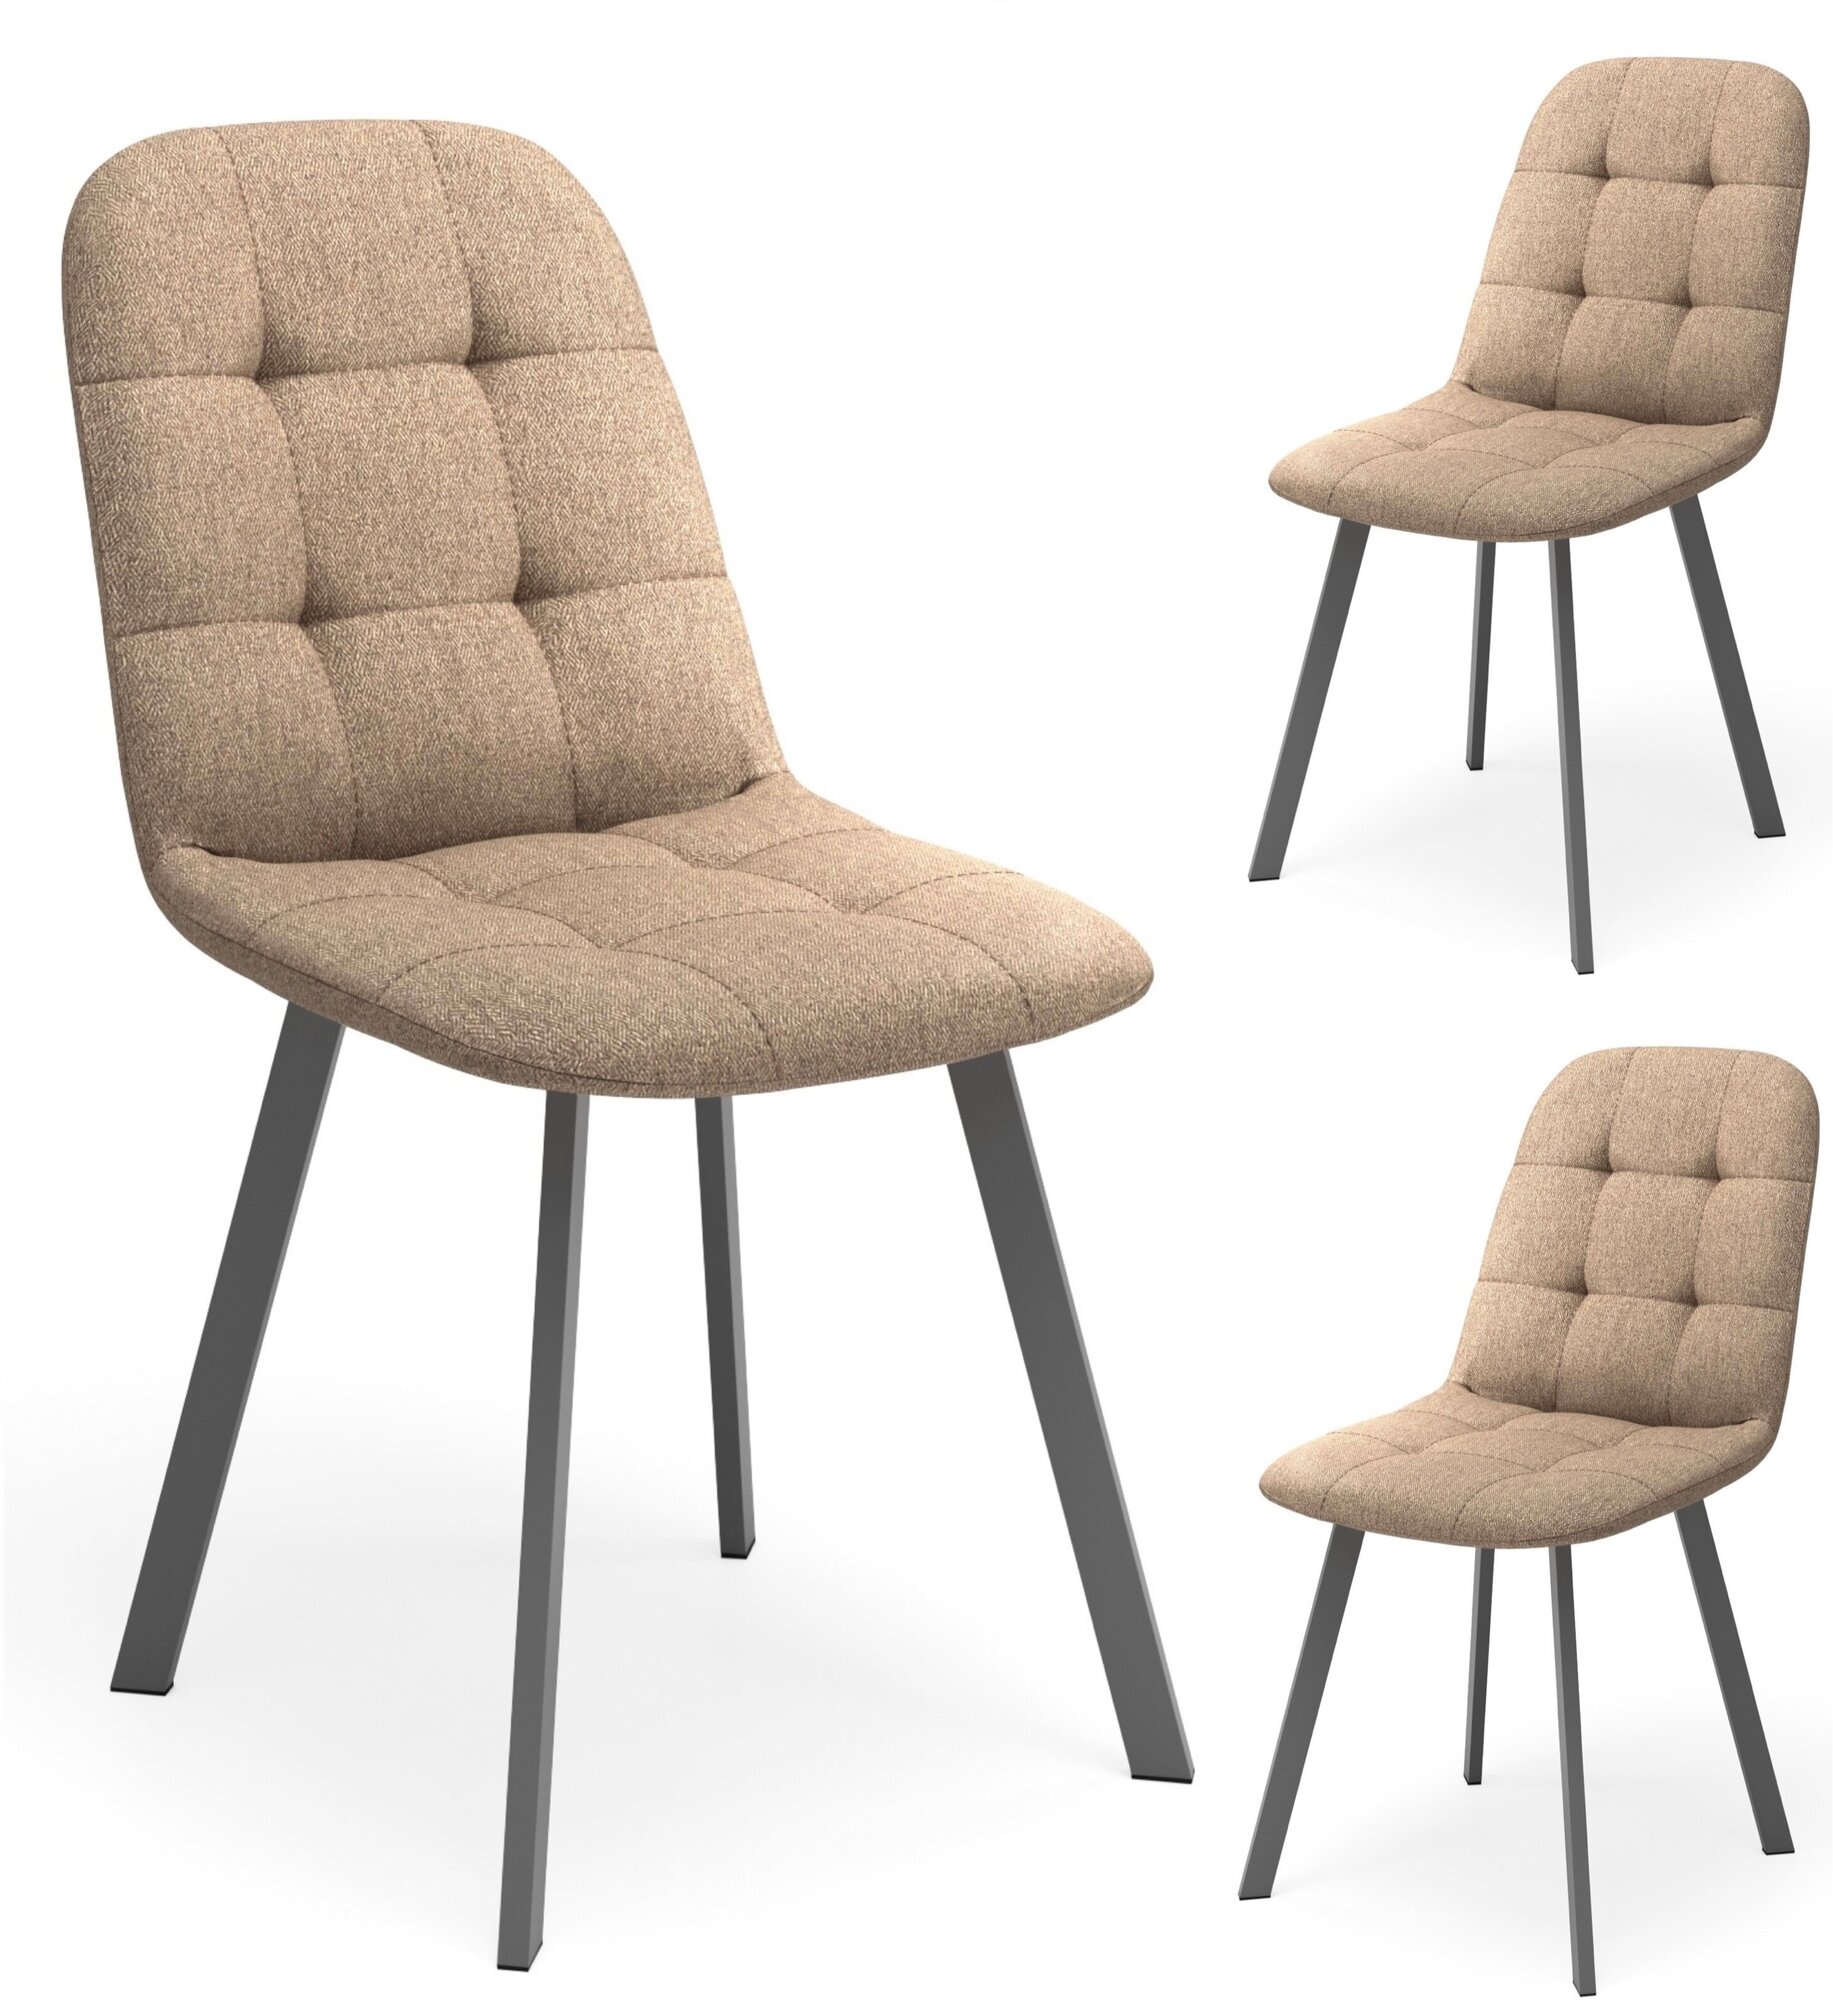 Комплект мягких стульев со спинкой для кухни 3 шт, светло-коричневая рогожка, каркас серый